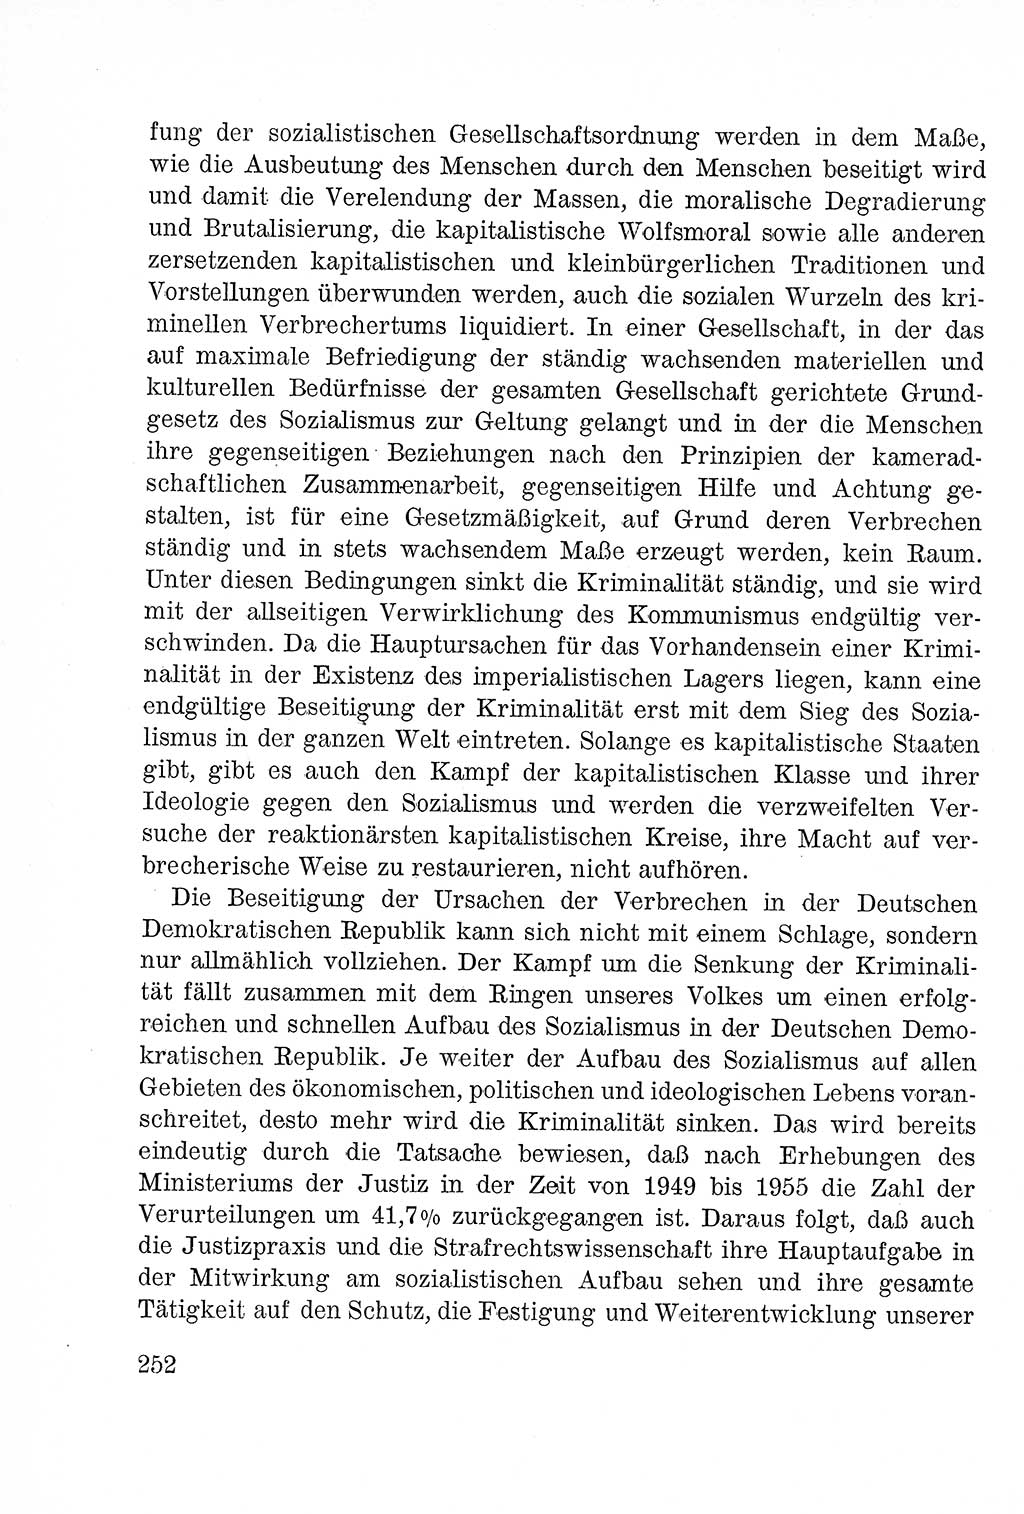 Lehrbuch des Strafrechts der Deutschen Demokratischen Republik (DDR), Allgemeiner Teil 1957, Seite 252 (Lb. Strafr. DDR AT 1957, S. 252)